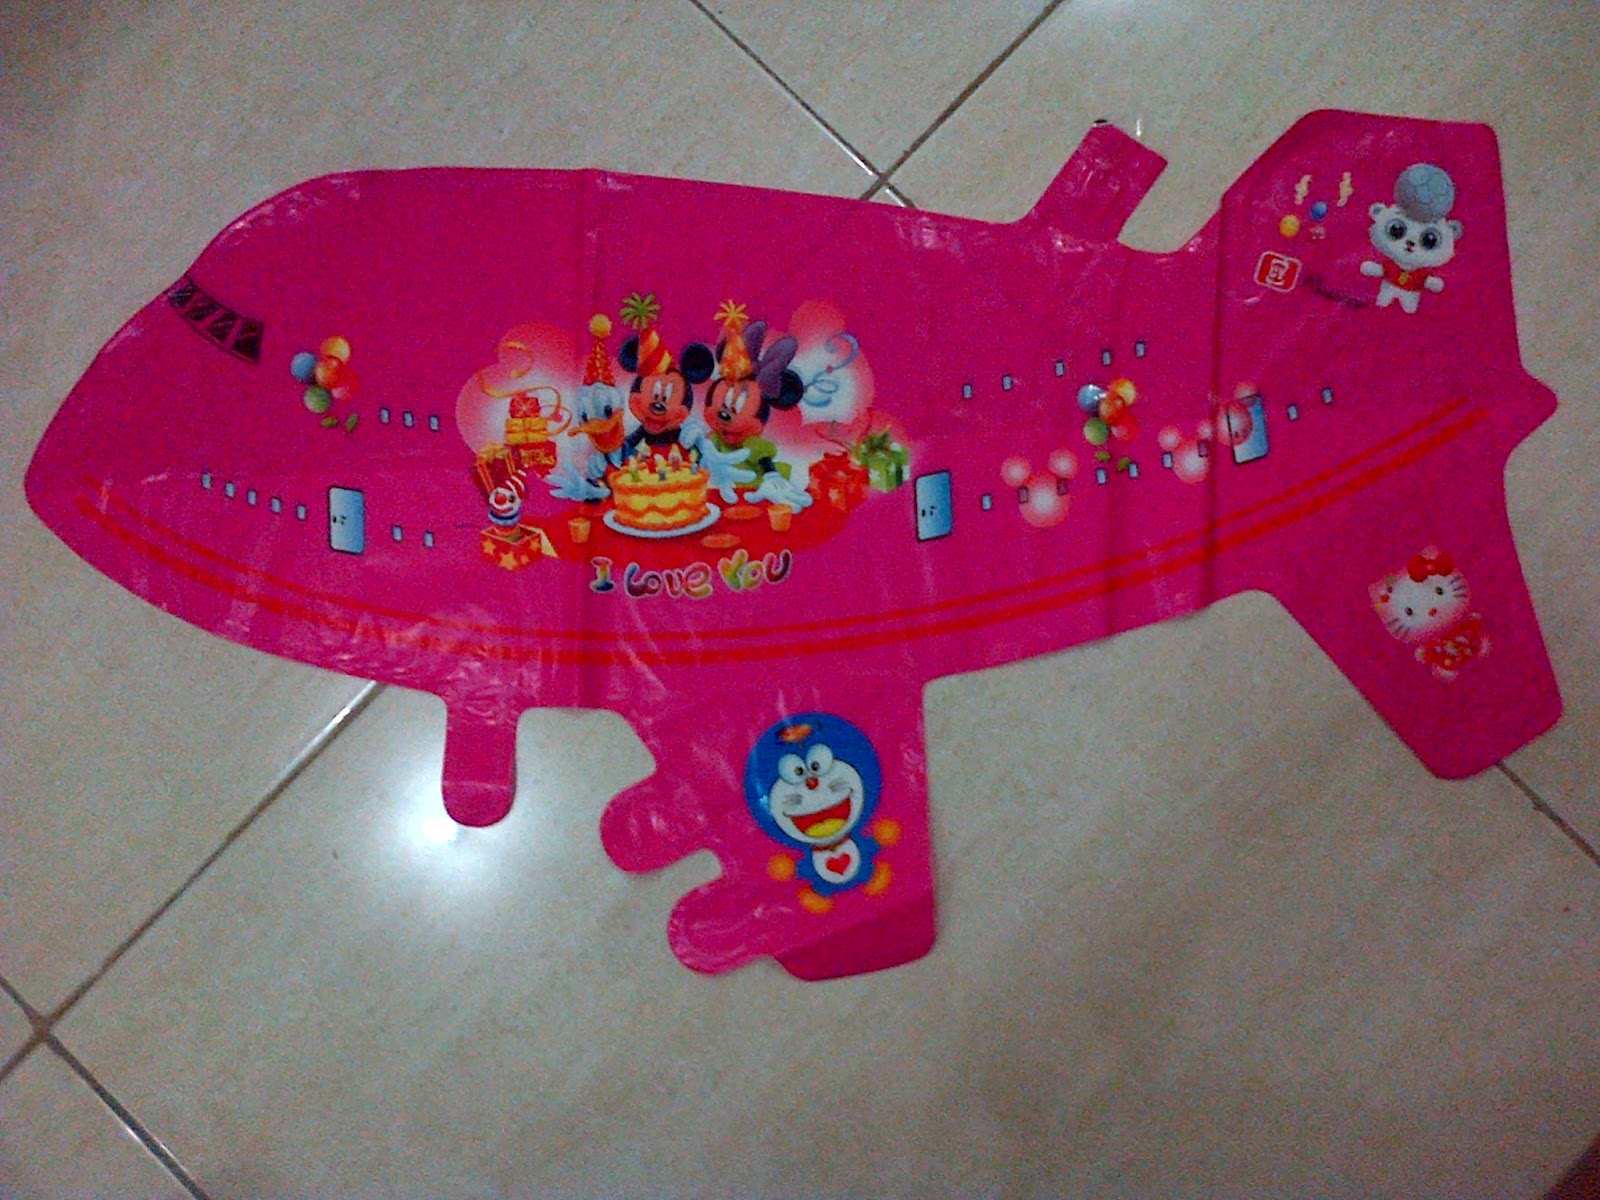 Balon Character Pesawat Pink Anugerah Utama Toys